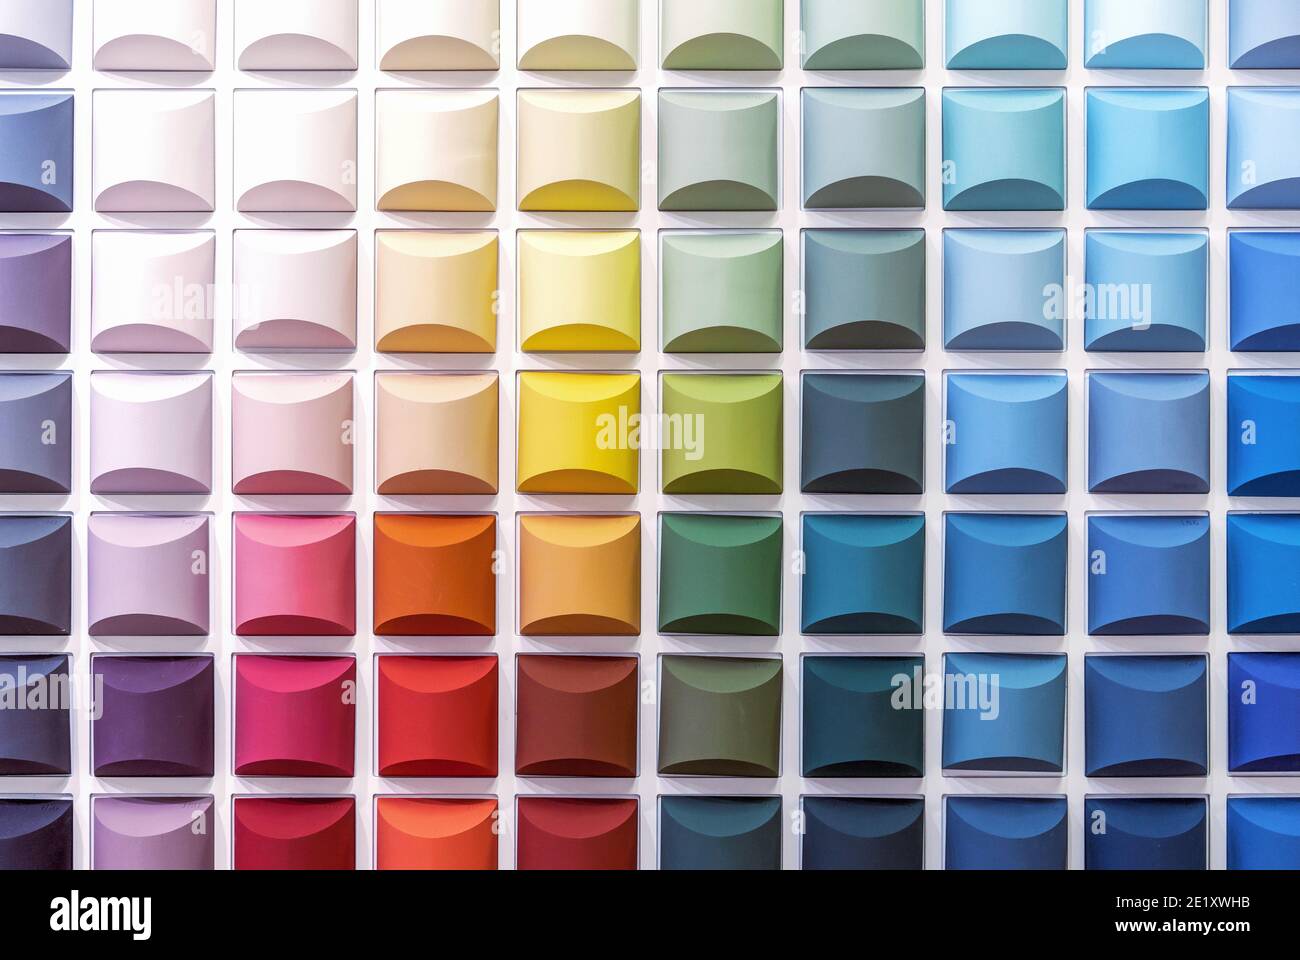 Mehrfarbige Quadrate mit 3d-Effekt auf weißem Hintergrund. Muster von Innenfarben in Form von volumetrischen Farbwürfeln. Stockfoto